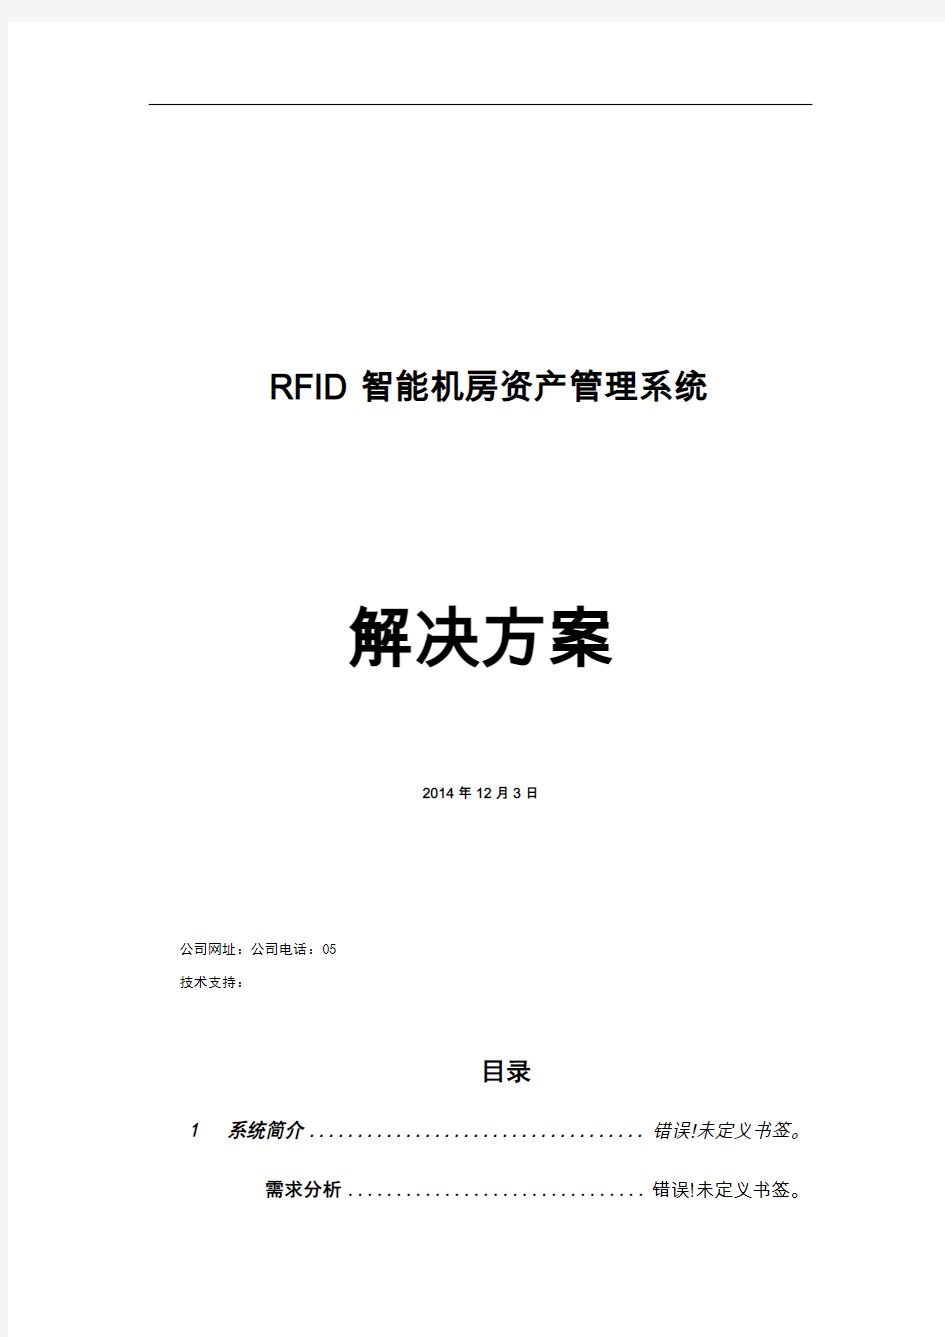 RFID智能机房资产管理系统_软件技术方案